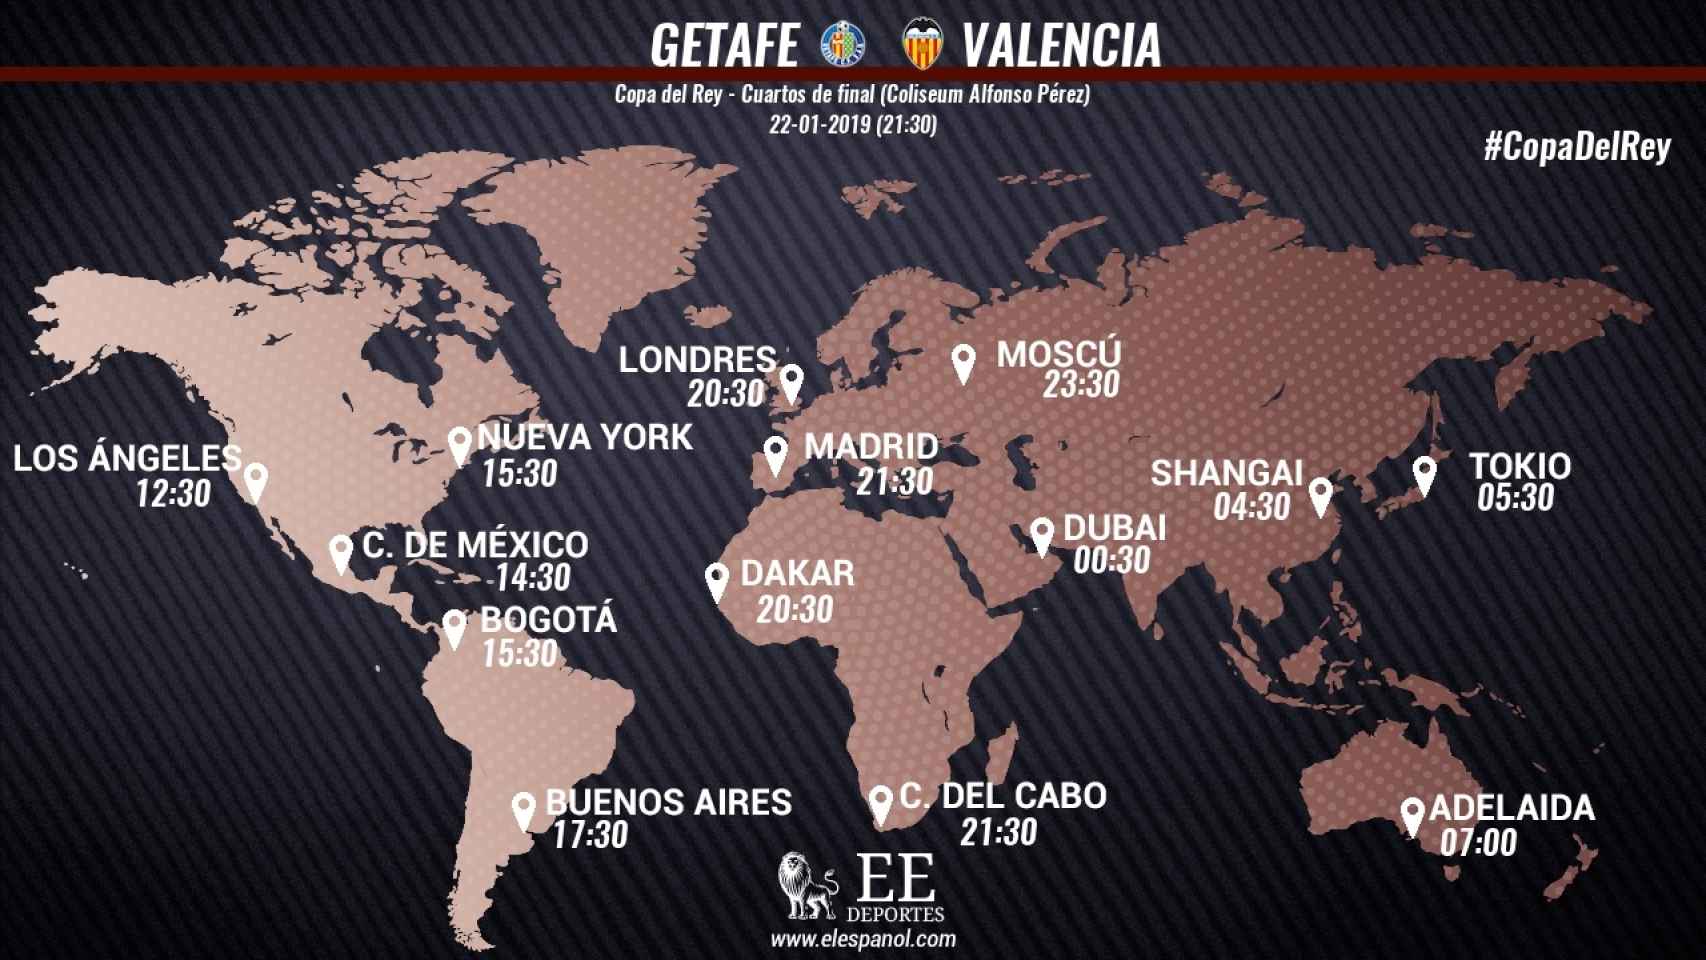 Horario internacional del Getafe - Valencia